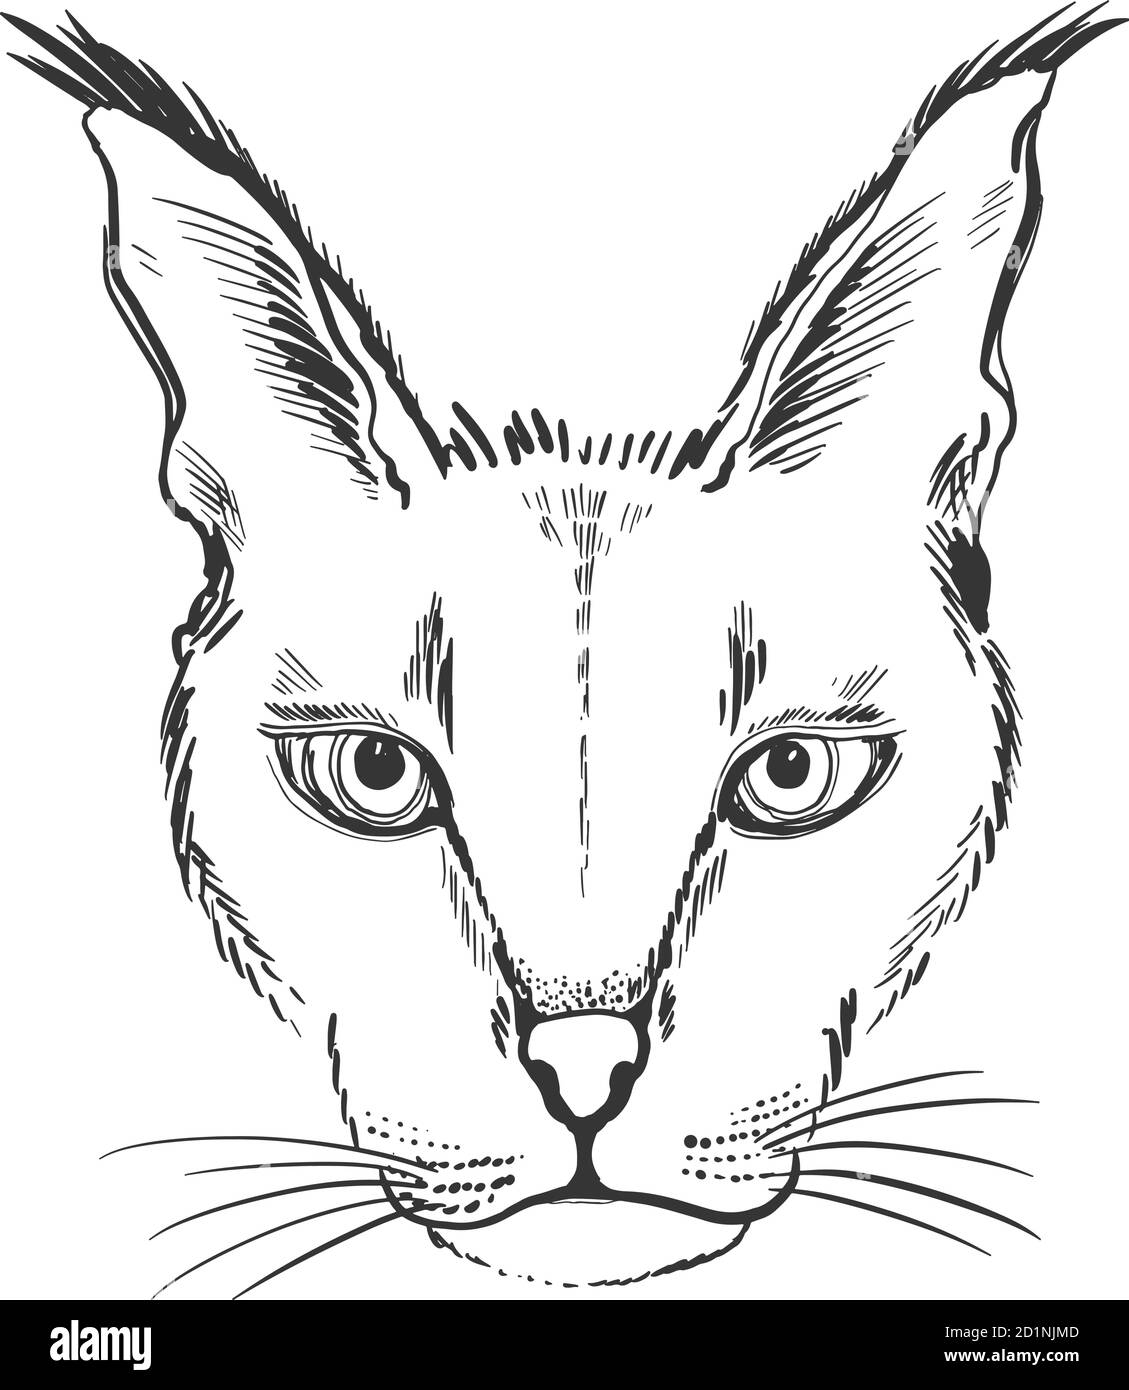 Grafica dello schizzo della testa dell'animale lynx. Colore monocromatico carino, isolato su sfondo bianco. Illustrazione Vettoriale